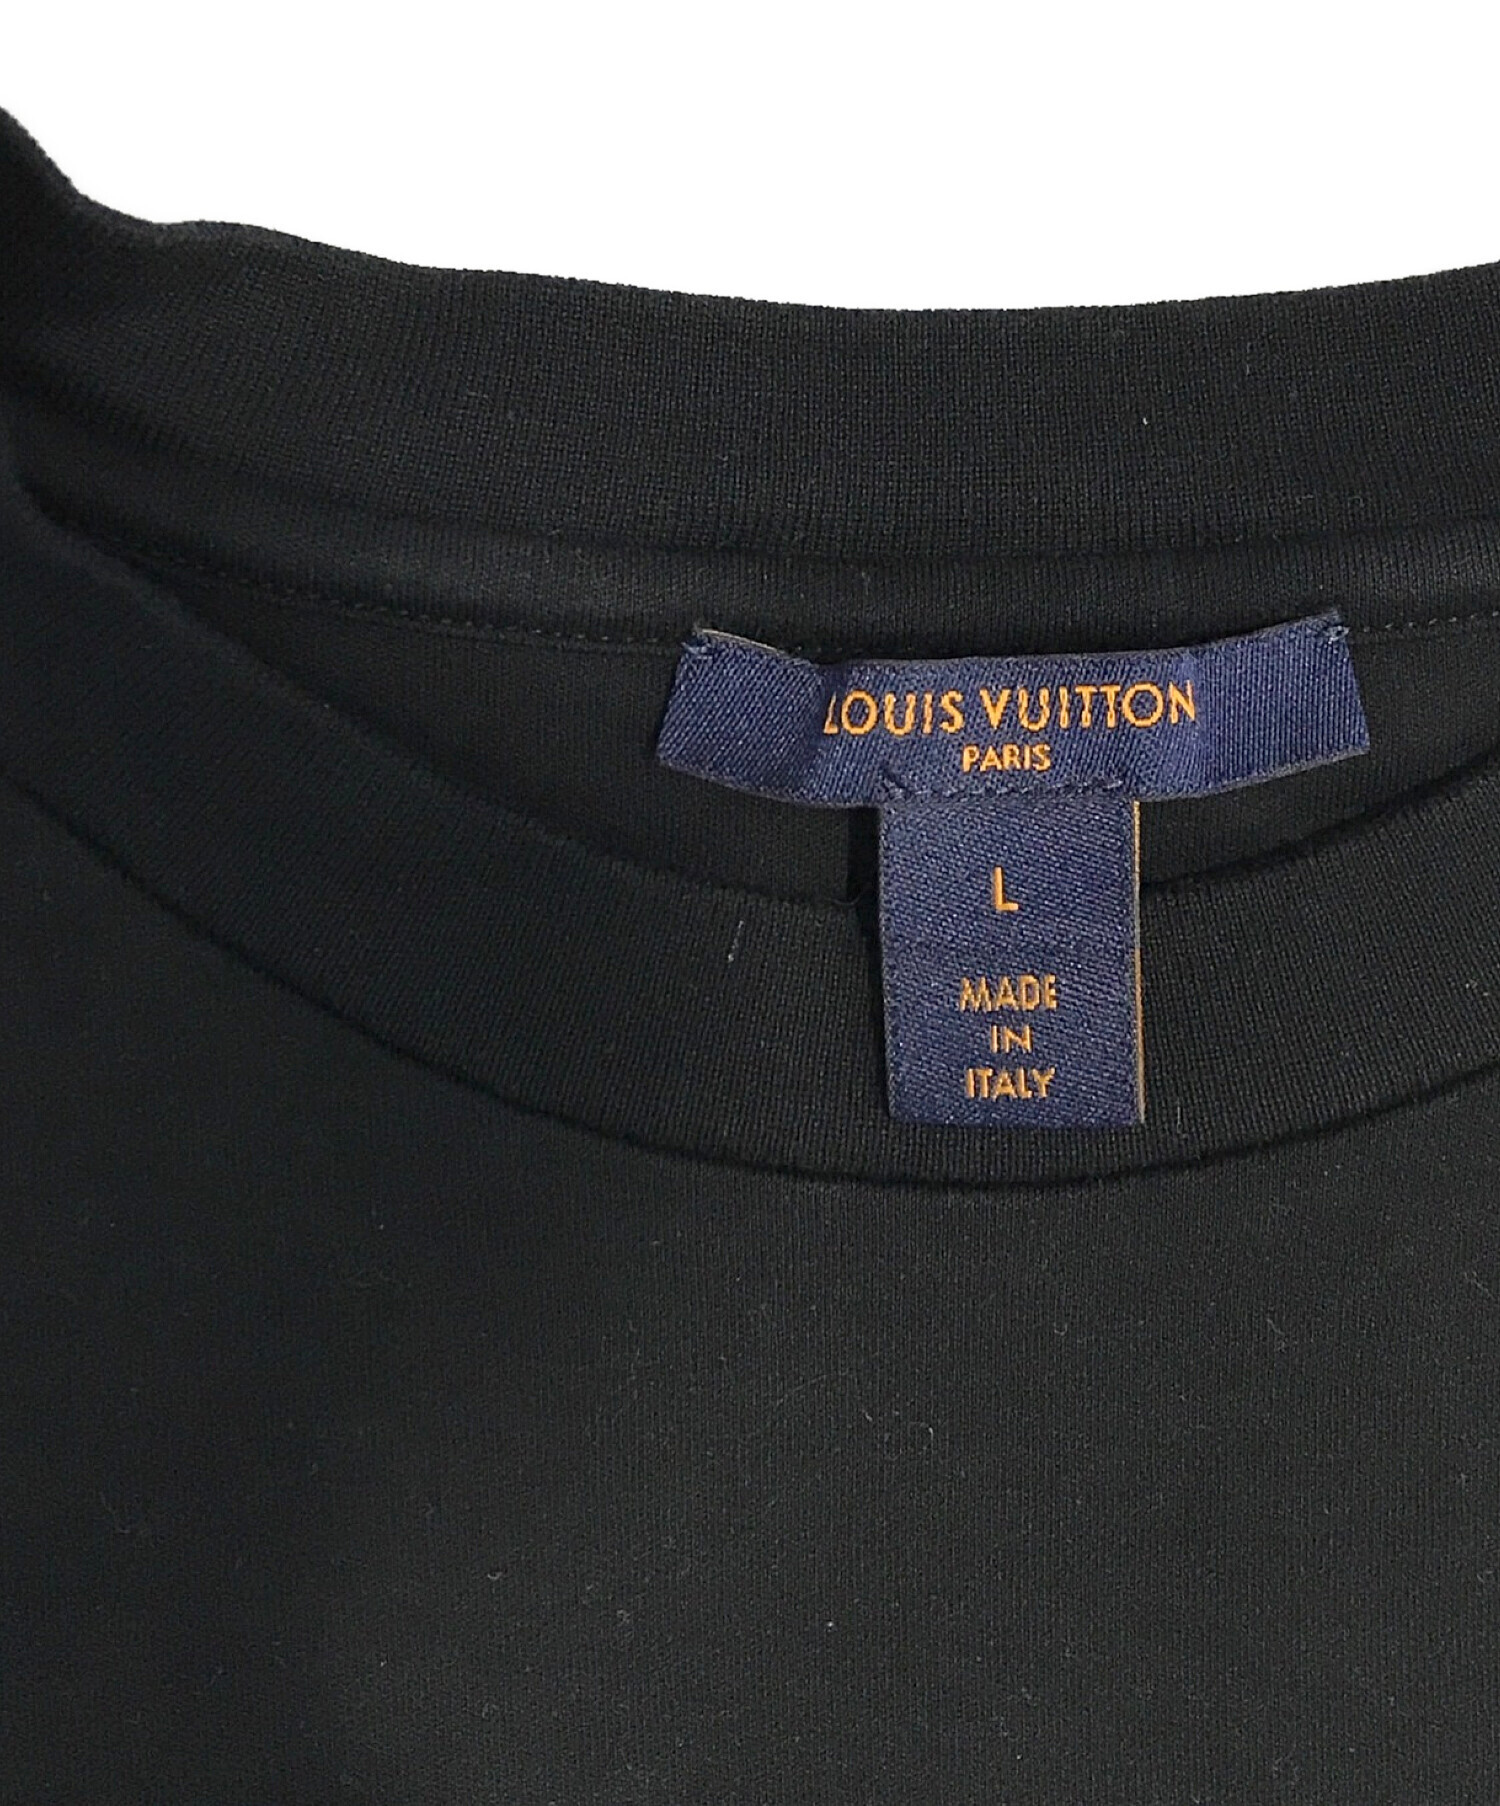 LOUIS VUITTON (ルイ ヴィトン) プリントTシャツ ブラック サイズ:L